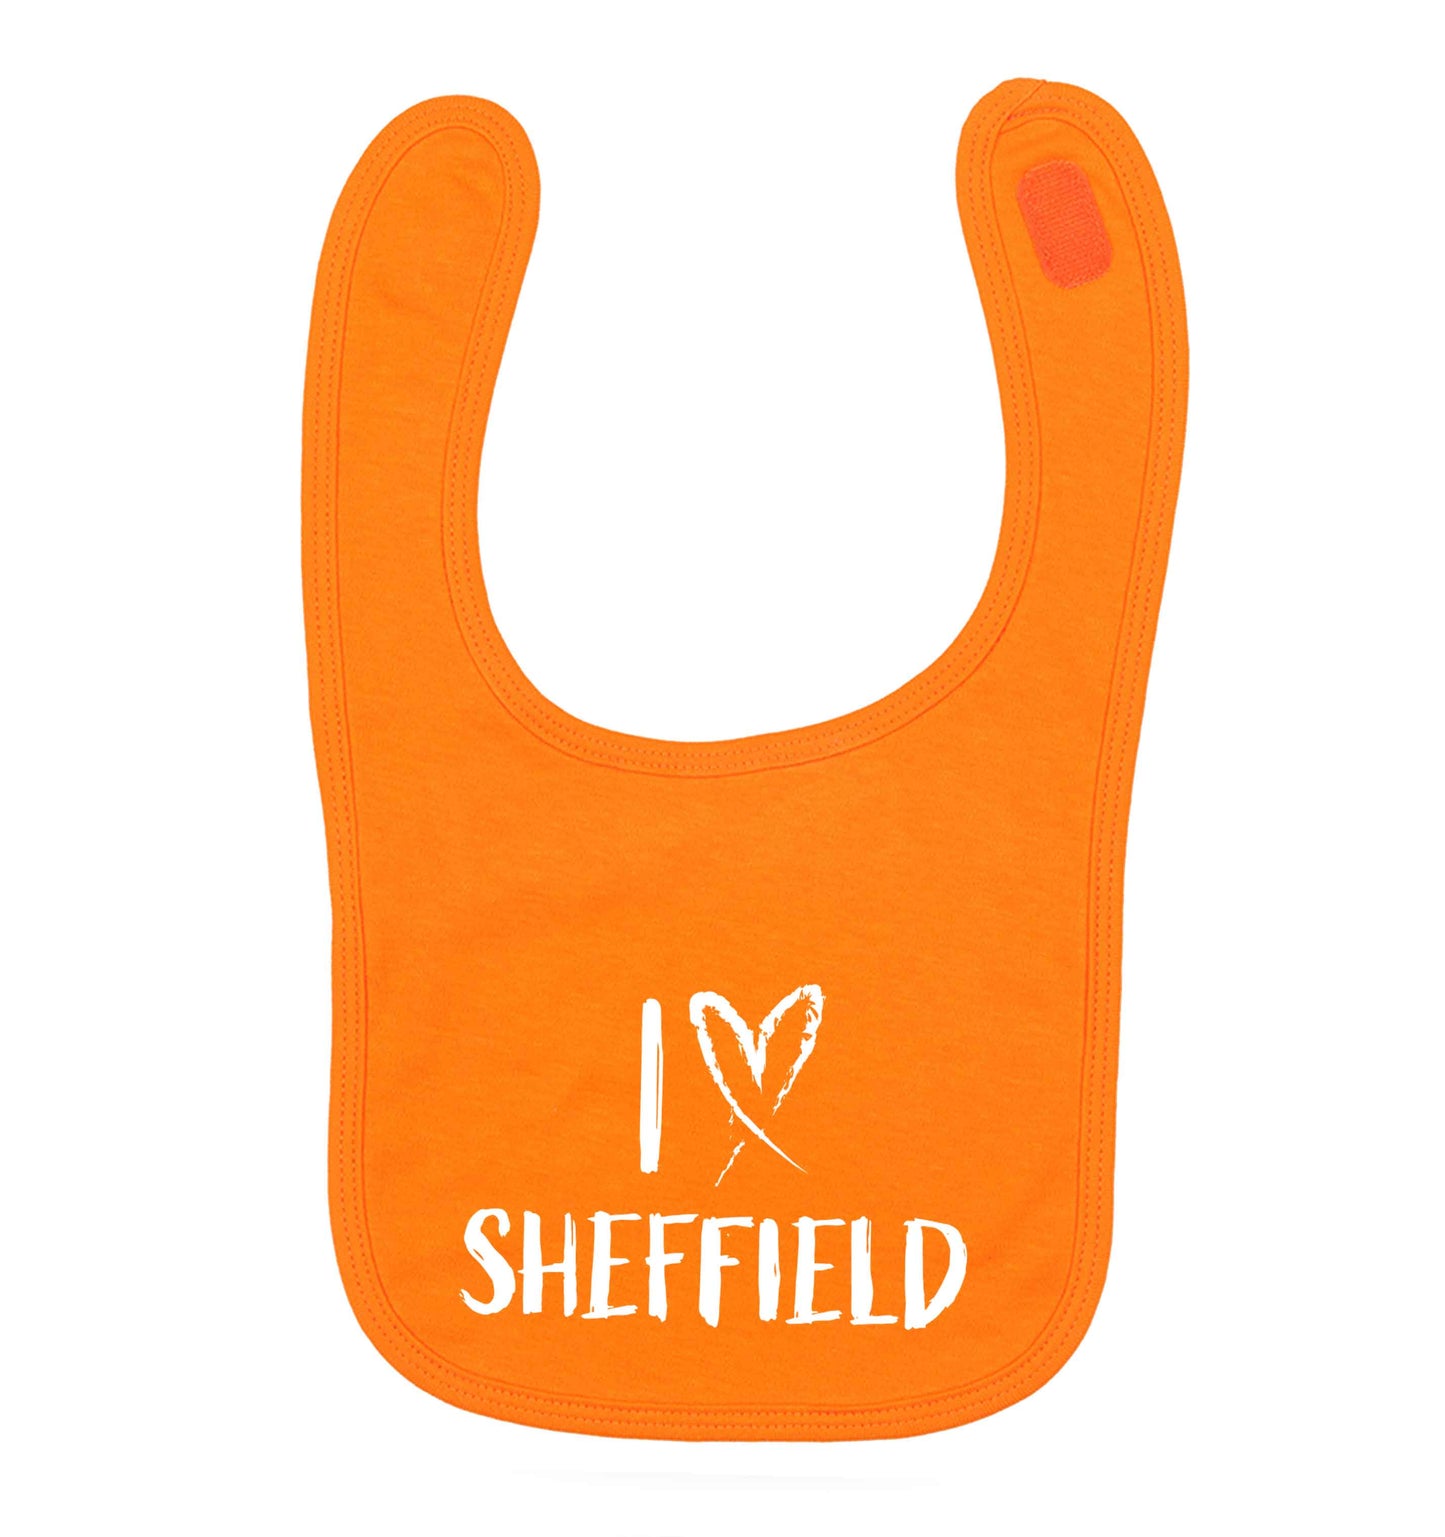 I love Sheffield orange baby bib